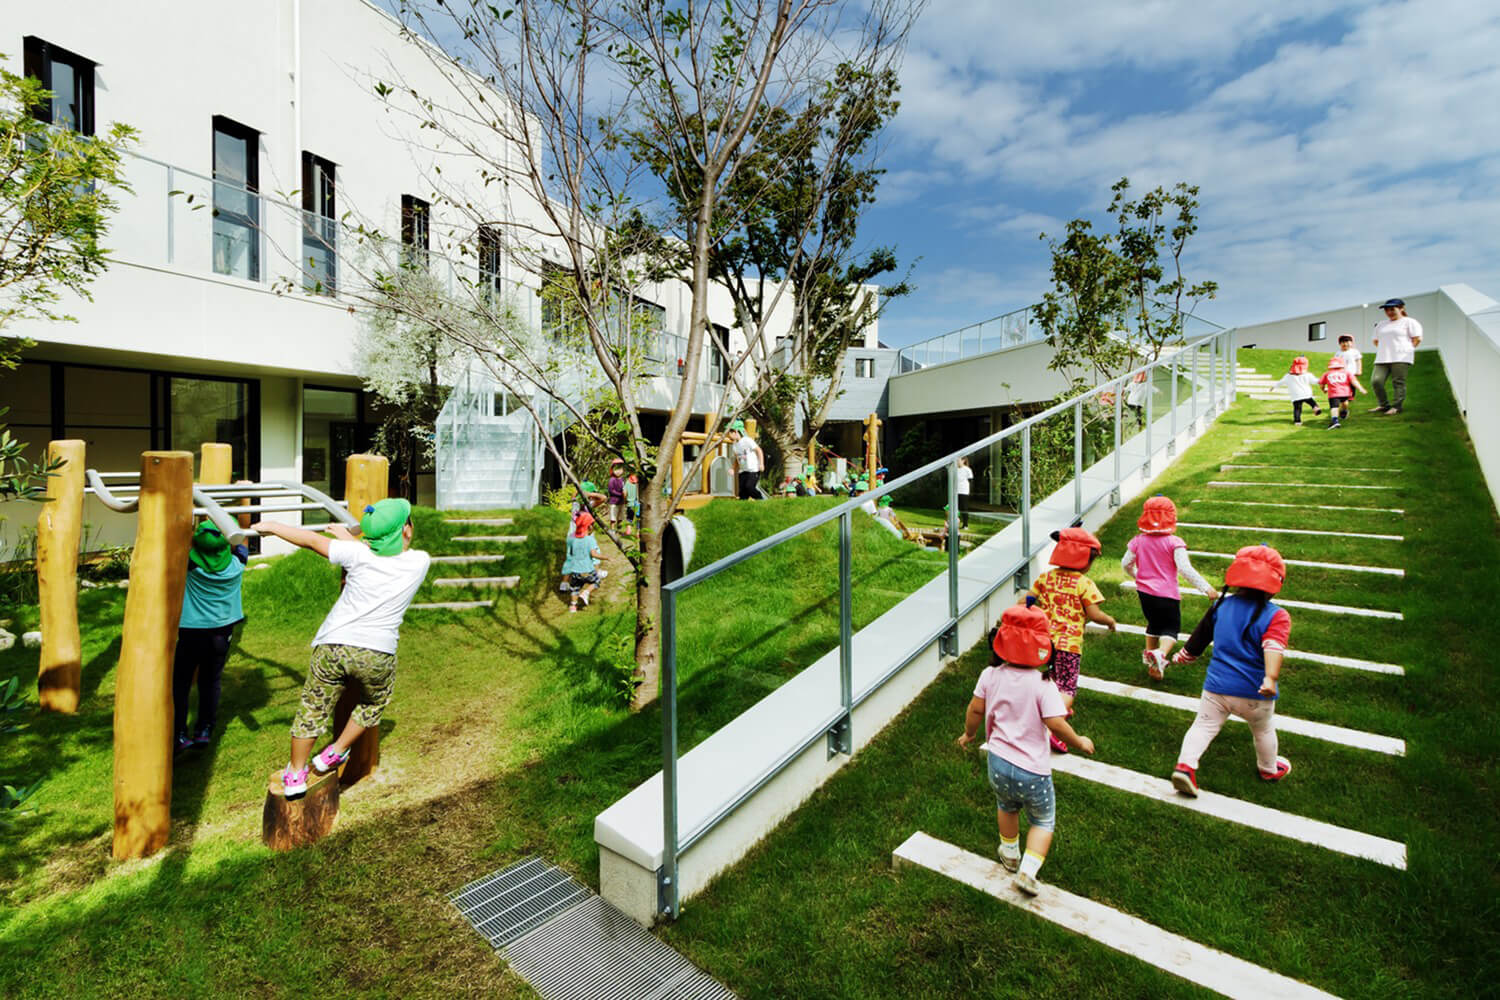 Khuôn viên cây xanh giáo dục trẻ có các hoạt động thực hành như trồng cây, trồng rau bảo vệ môi trường